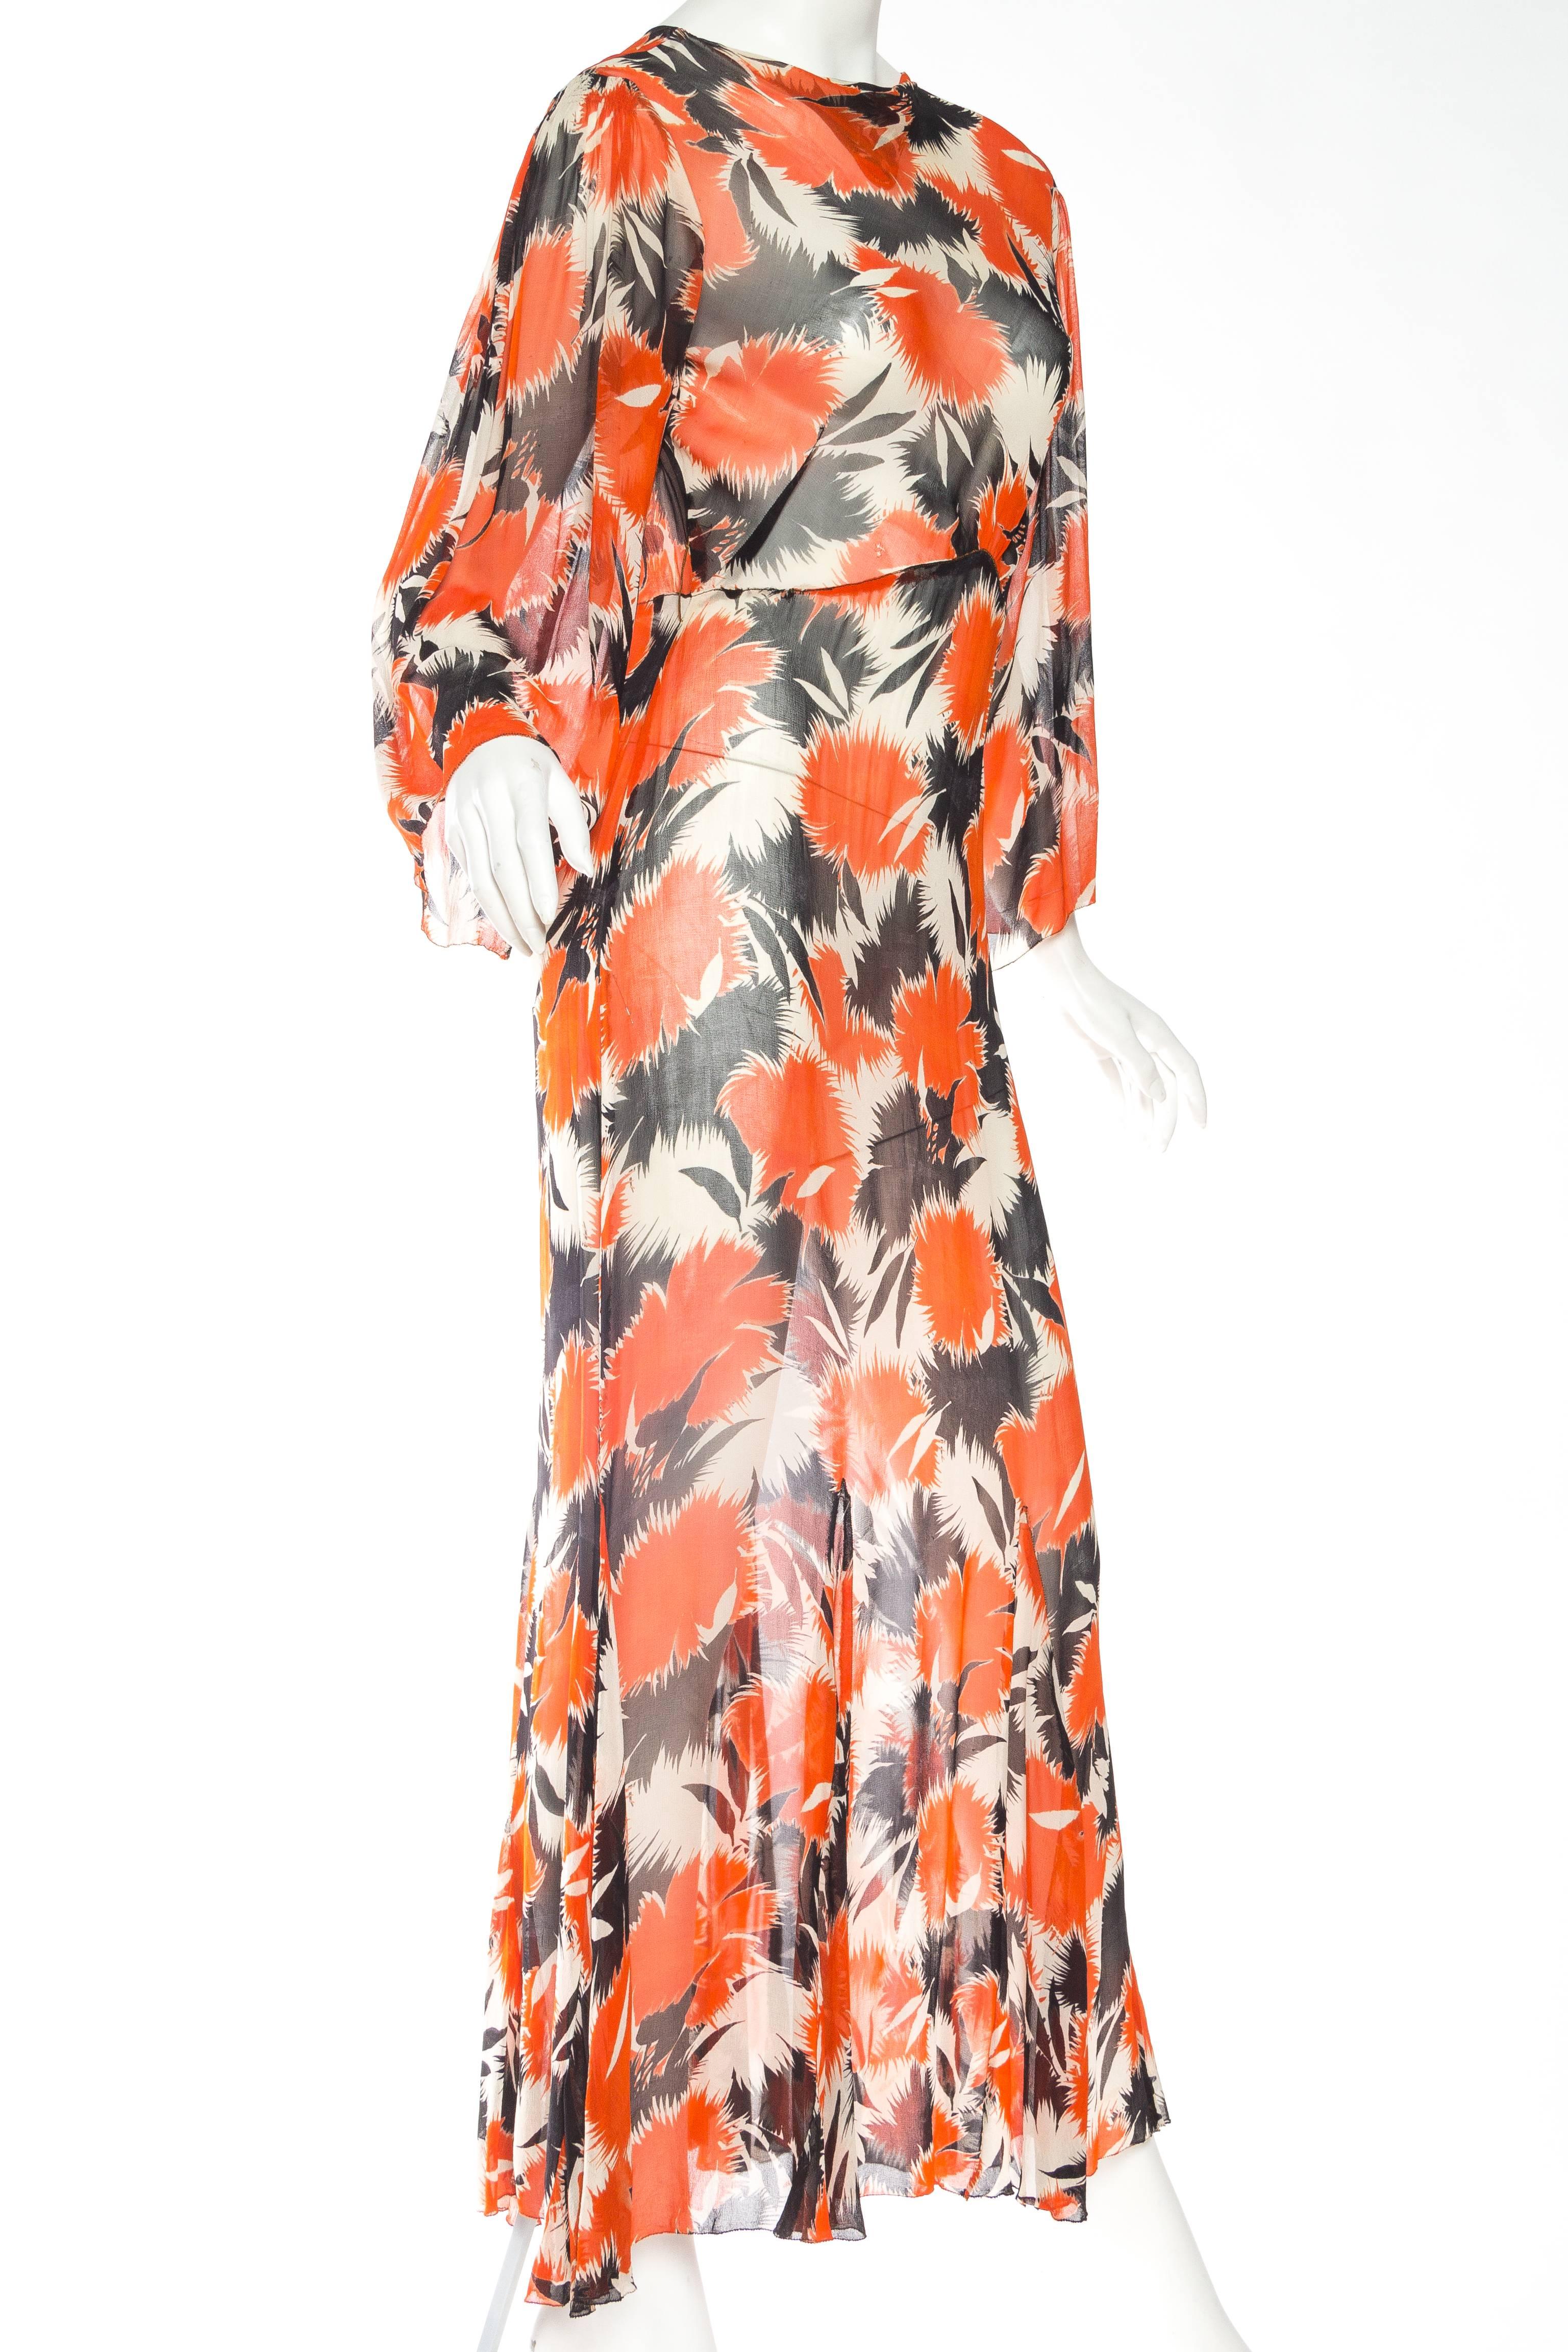 Women's 1930s Sheer Silk Chiffon Abstract Floral Tea Dress